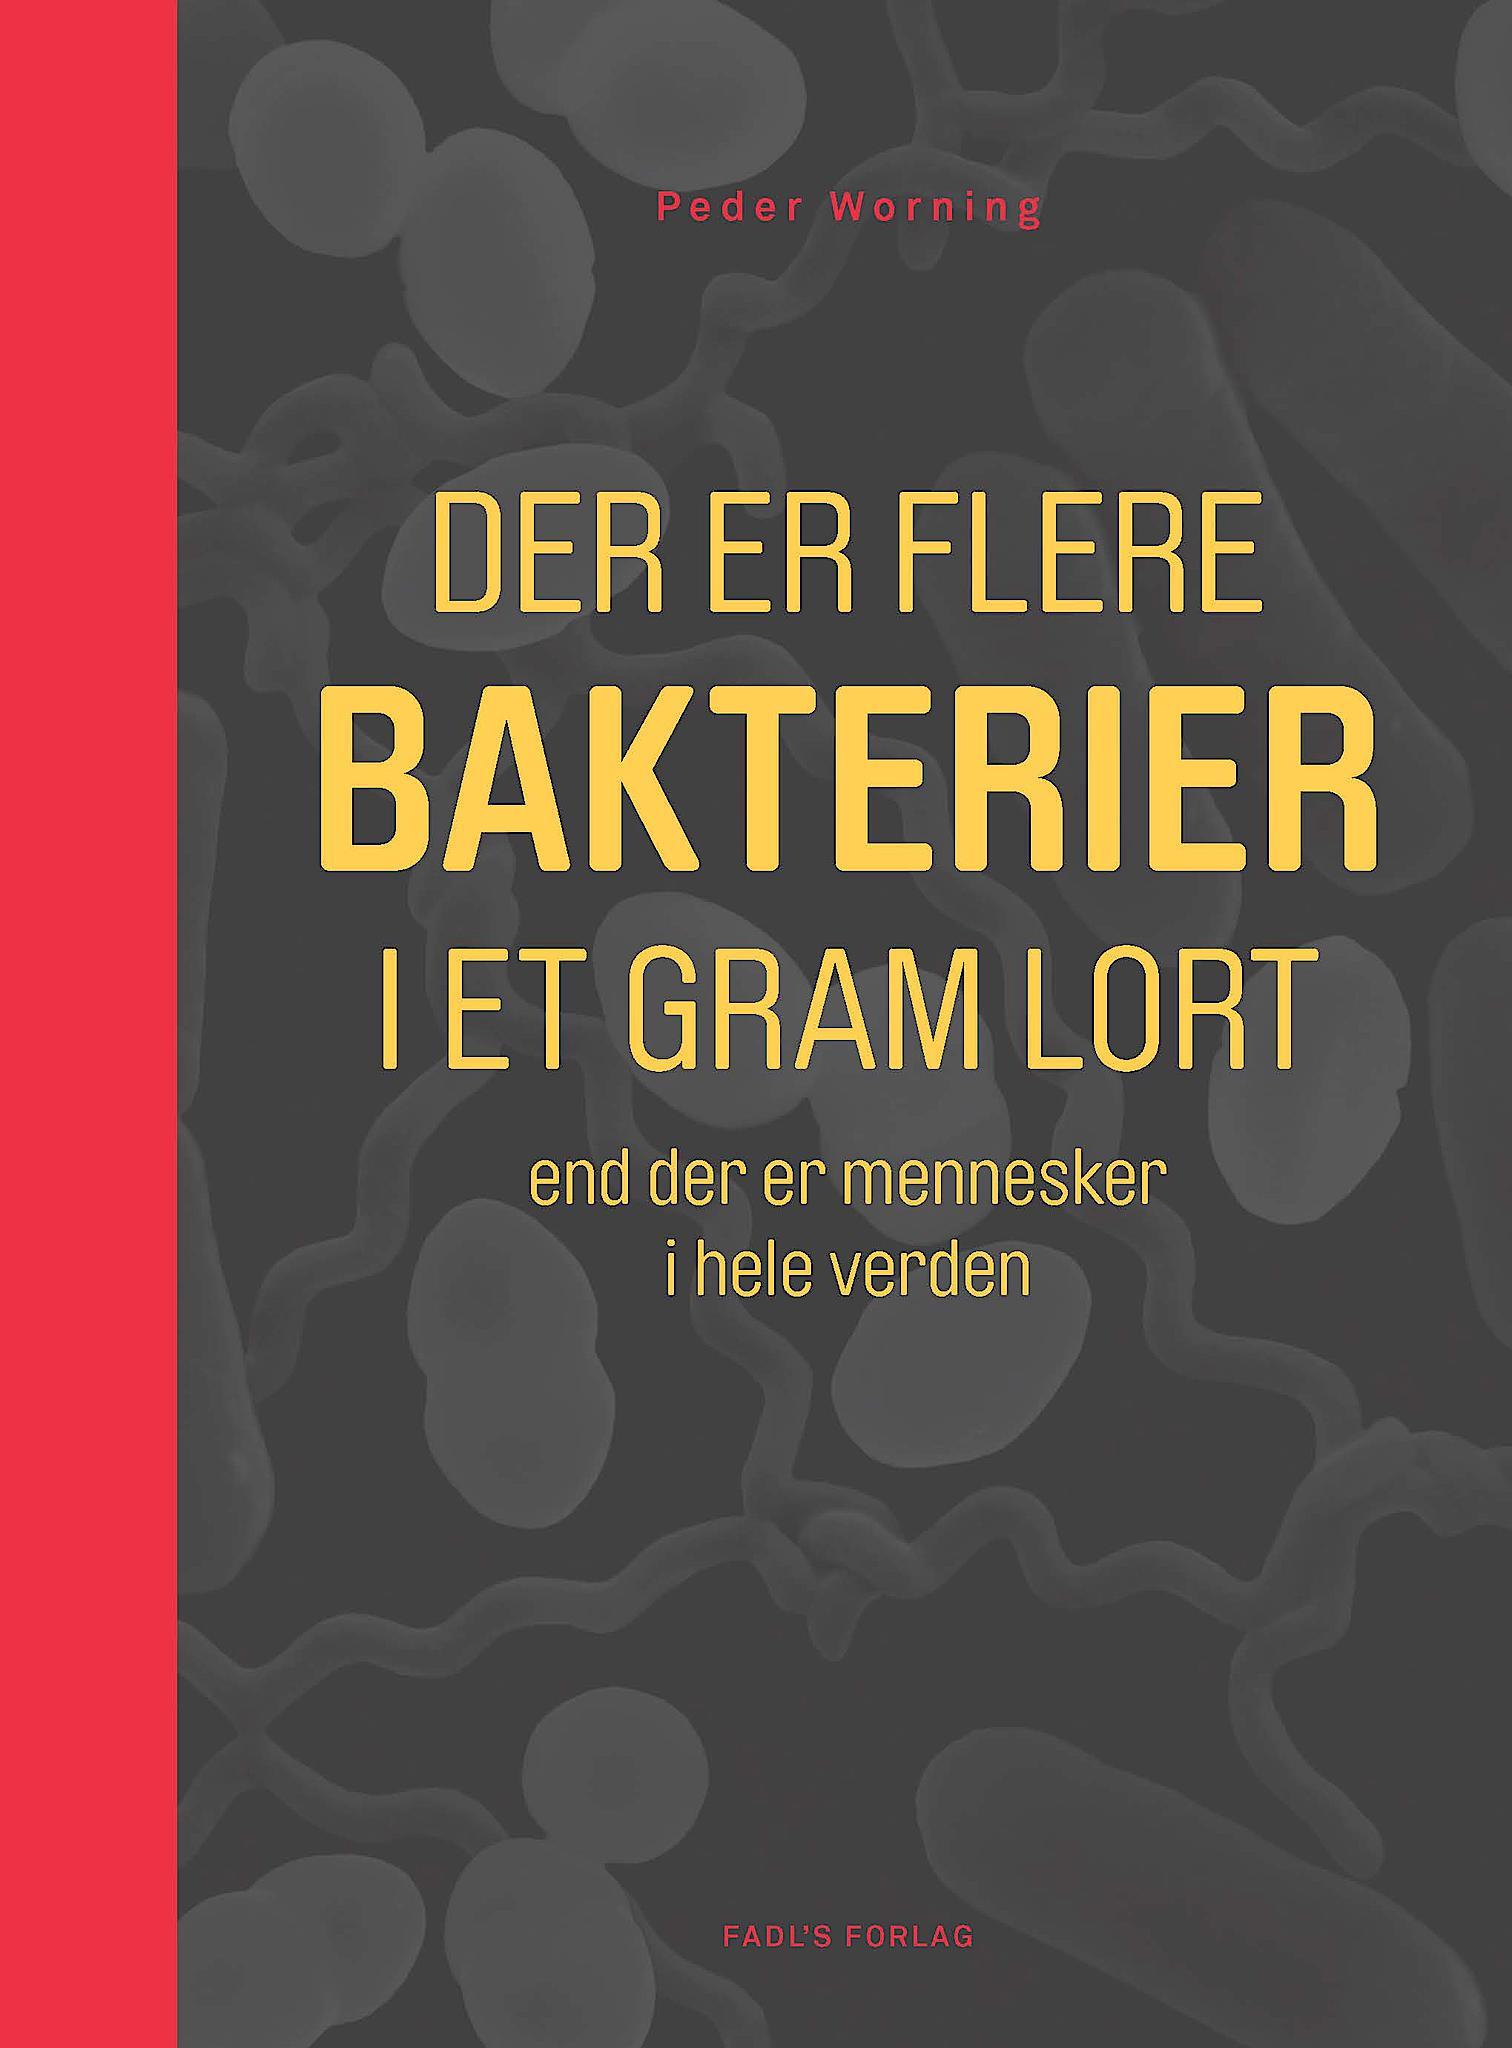 Peder Worning. Der er flere bakterier i et gram lort, end der er mennesker i hele verden. Fadls Forlag, 2014. 
255 sider. Pris: 299,99 kr.